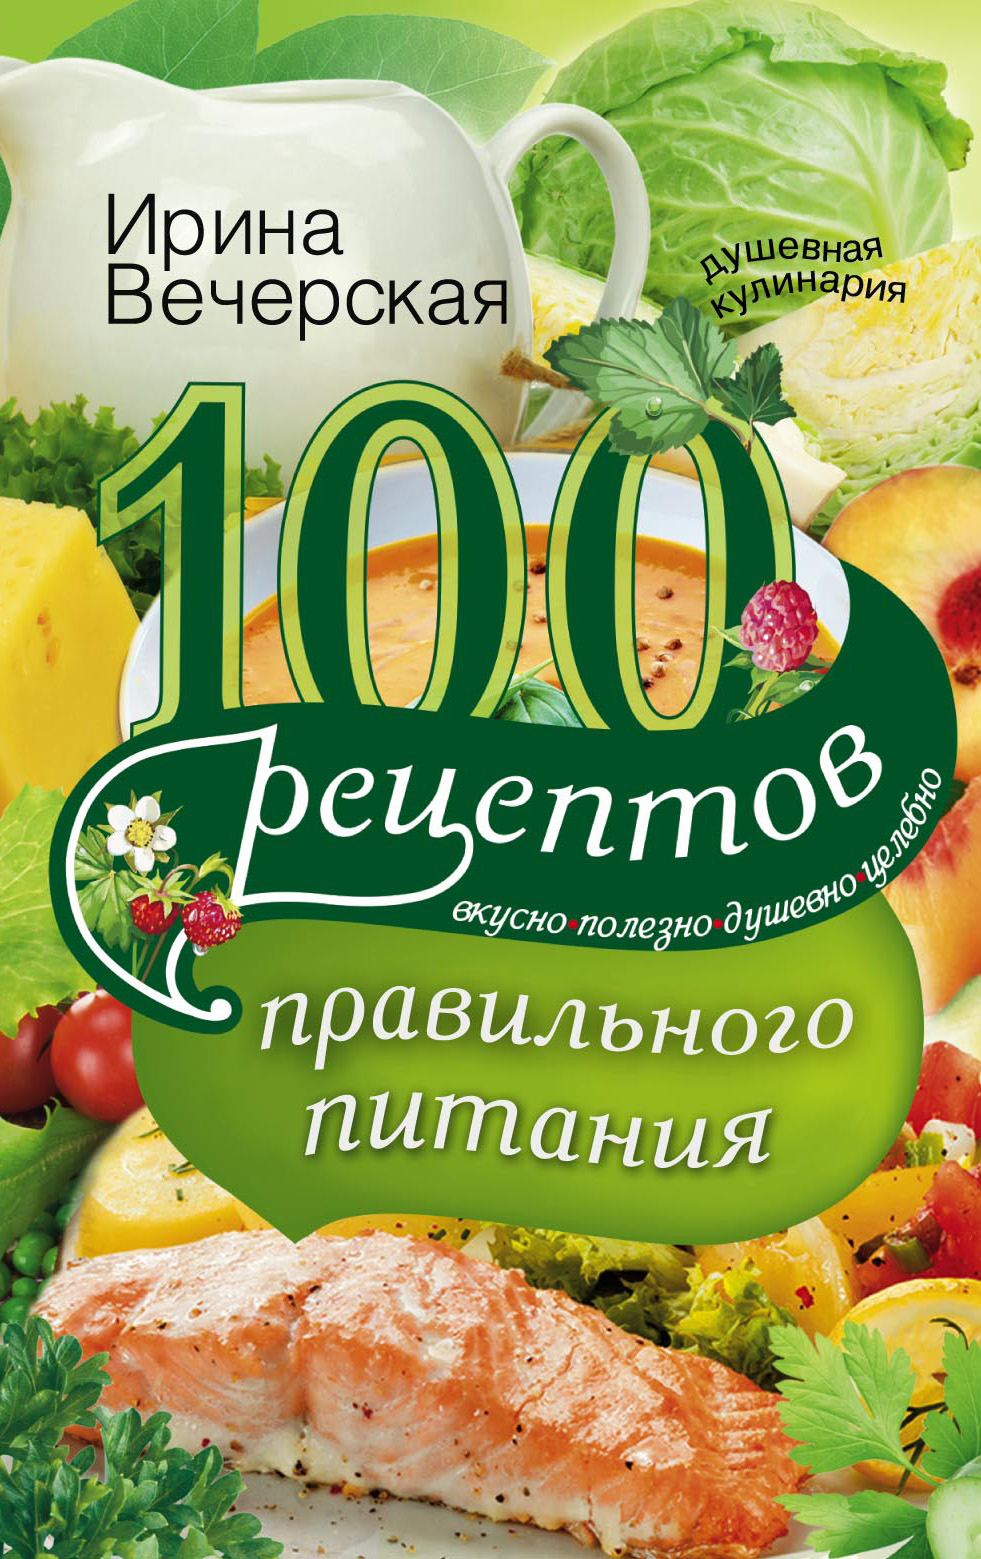 Рецепты здорового питания, Ольга Сарварова – скачать pdf на ЛитРес